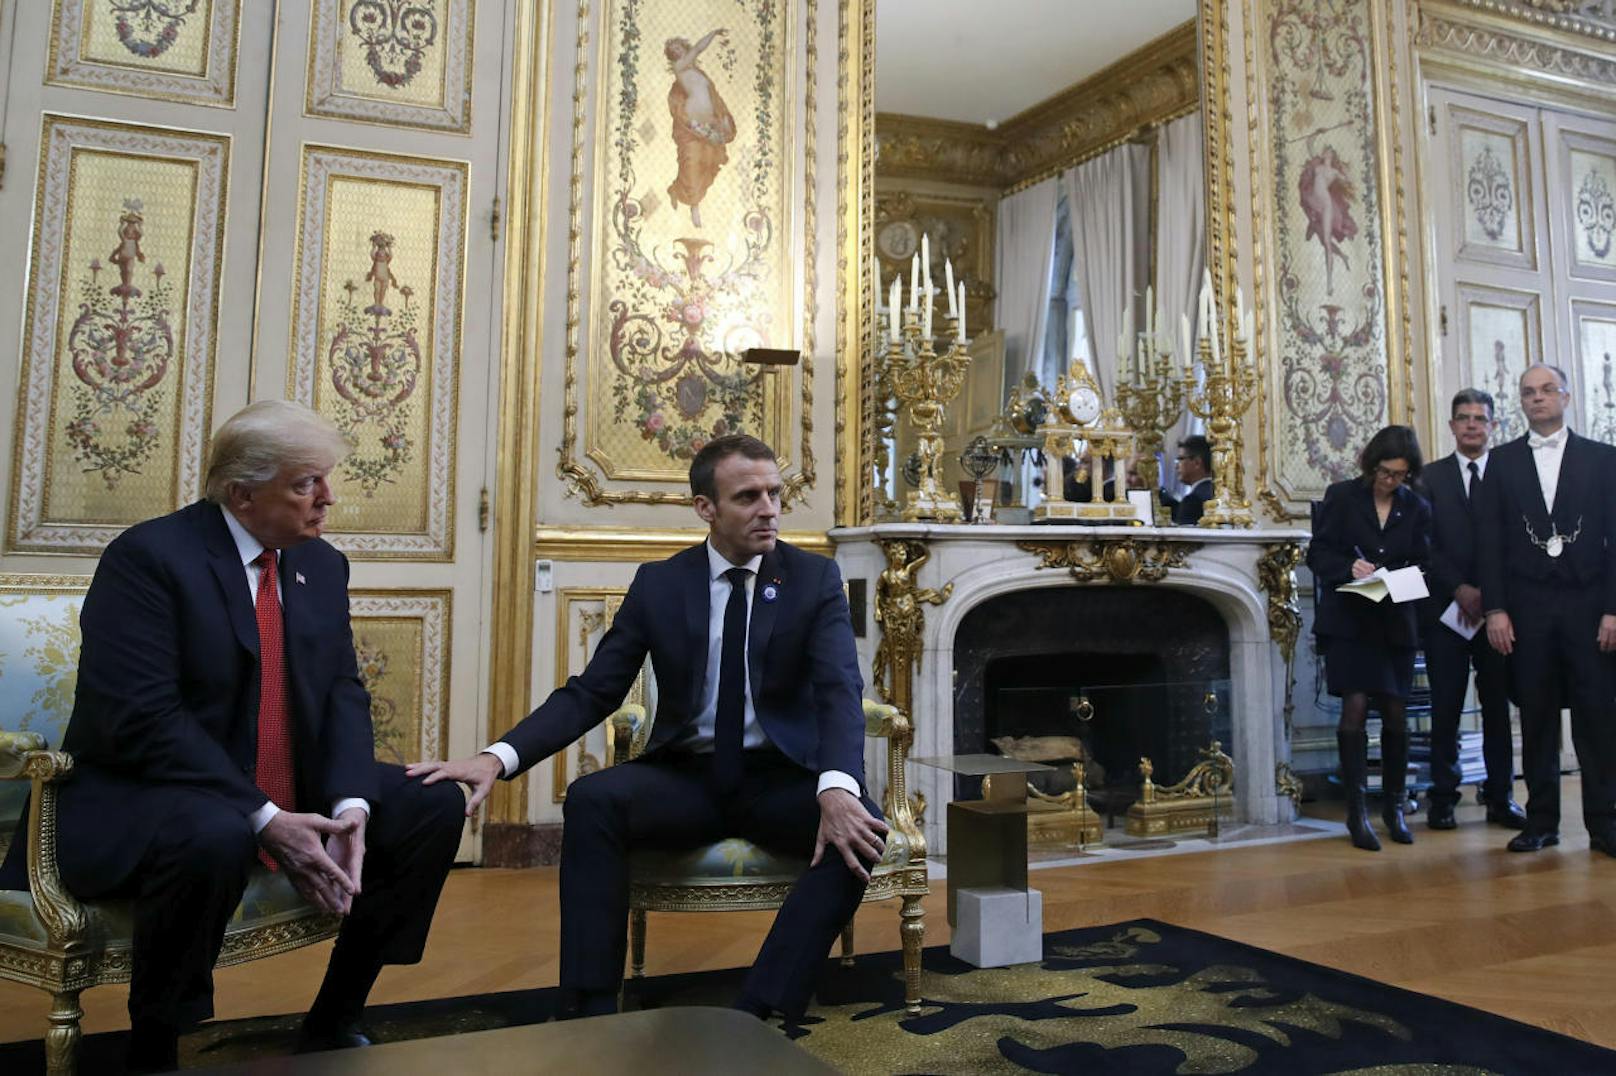 Seinen "Sieg" zeigte Macron mit einer weiteren Dominanzgeste: Er legte seine Hand auf Trumps Knie, so als woltle er sagen: "Er gehört jetzt mir."